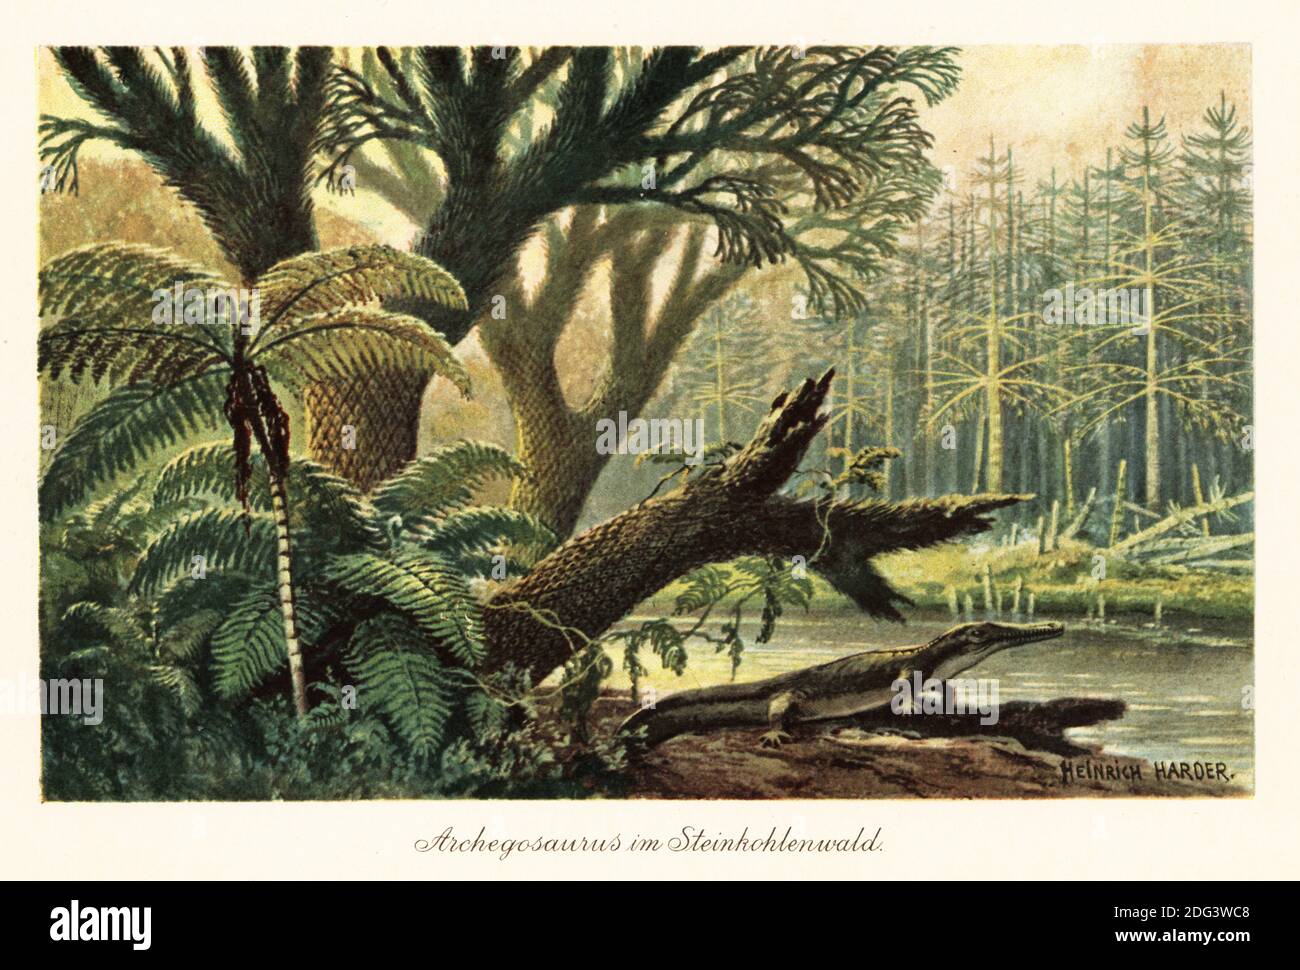 Archegosaurus decheni par une rive de rivière dans une jungle tropicale primordiale de fougères et de pins. Archegosaurus est un genre d'amphibien de temnospondyle, des stades Asselien à Wuchiapingien du Permien. Archegosaurus im Steinkohlenwald. Illustration imprimée en couleur par Heinrich Harder de Wilhelm Bolsche Tiere der Urwelt (les animaux du monde préhistorique), Reichardt Cocoa Company, Hambourg, 1908. Heinrich Harder (1858-1935) était un artiste de paysage allemand et un illustrateur de livre. Banque D'Images